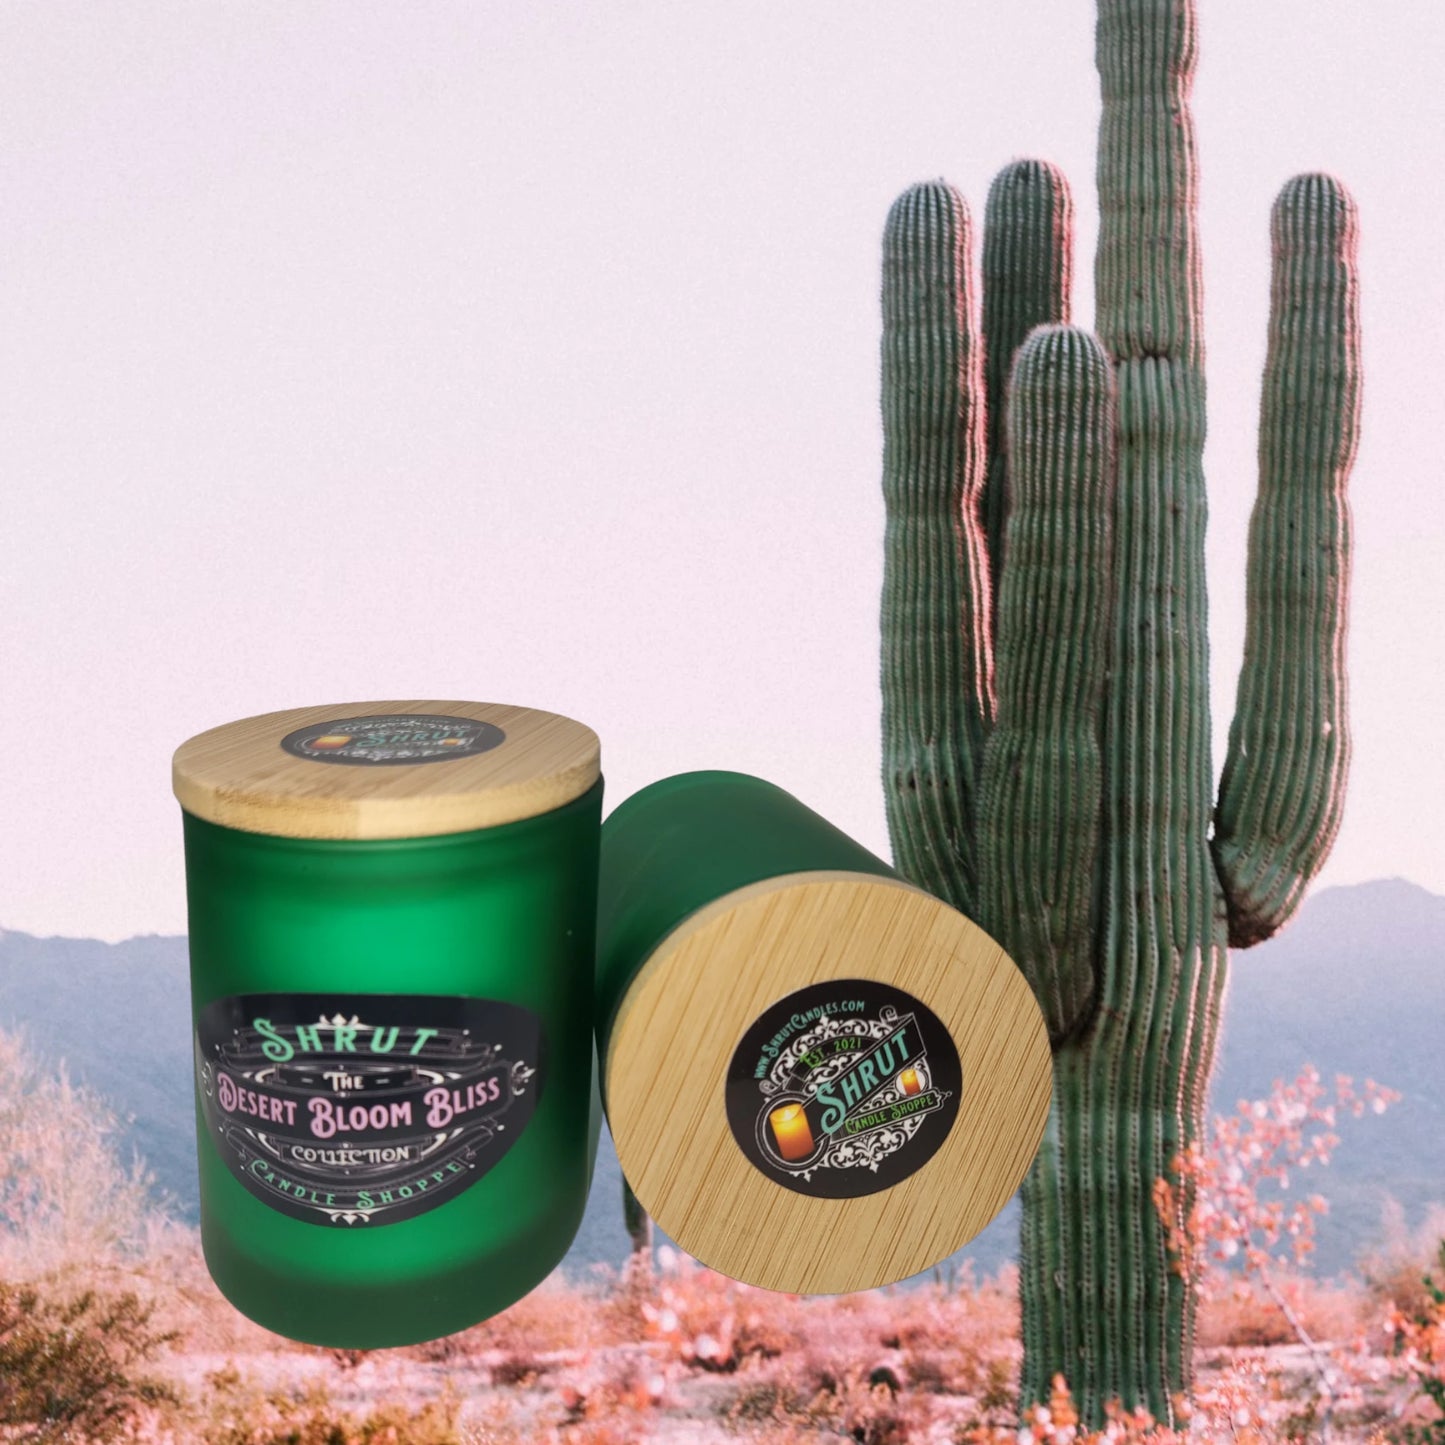 Desert Bloom Bliss: Sunlit Cactus & Vanilla Whispers